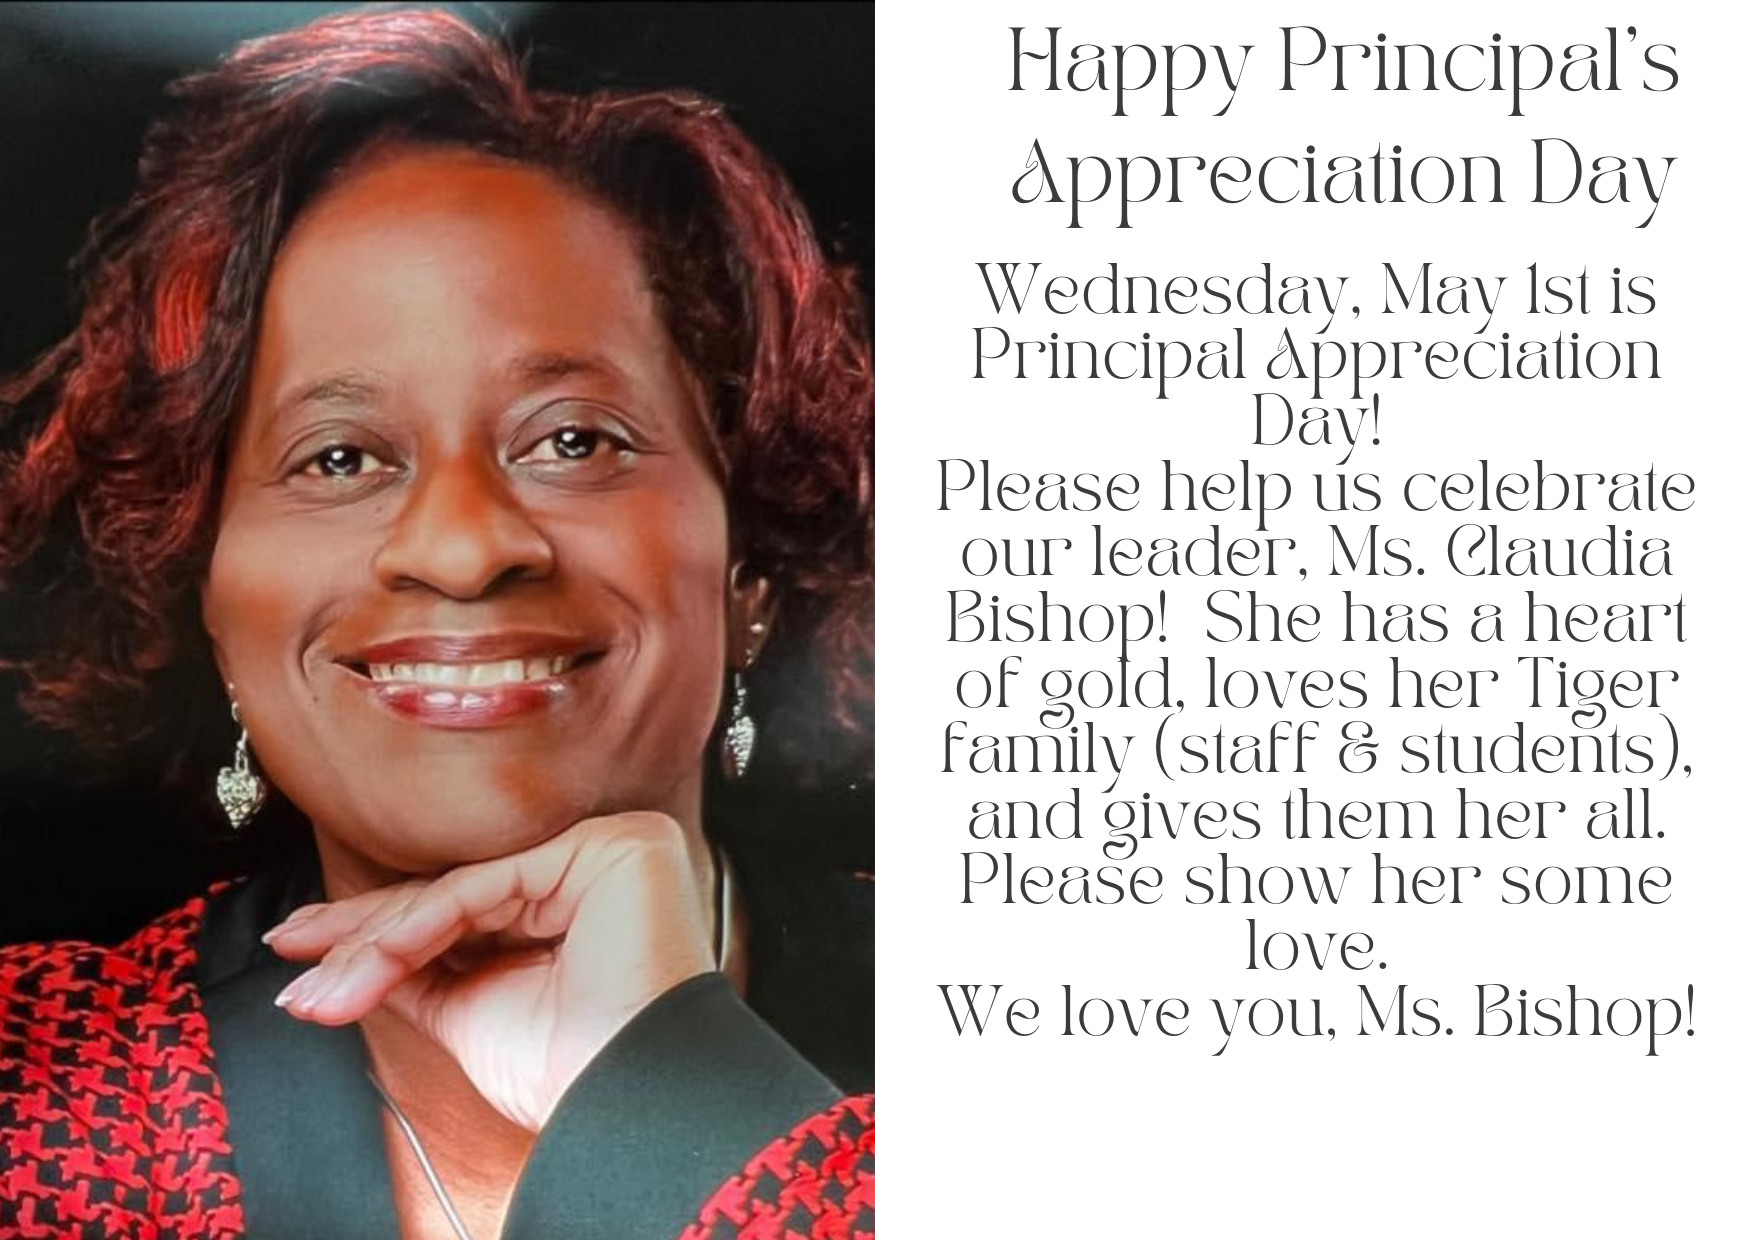 Happy Principals Day Ms. Bishop